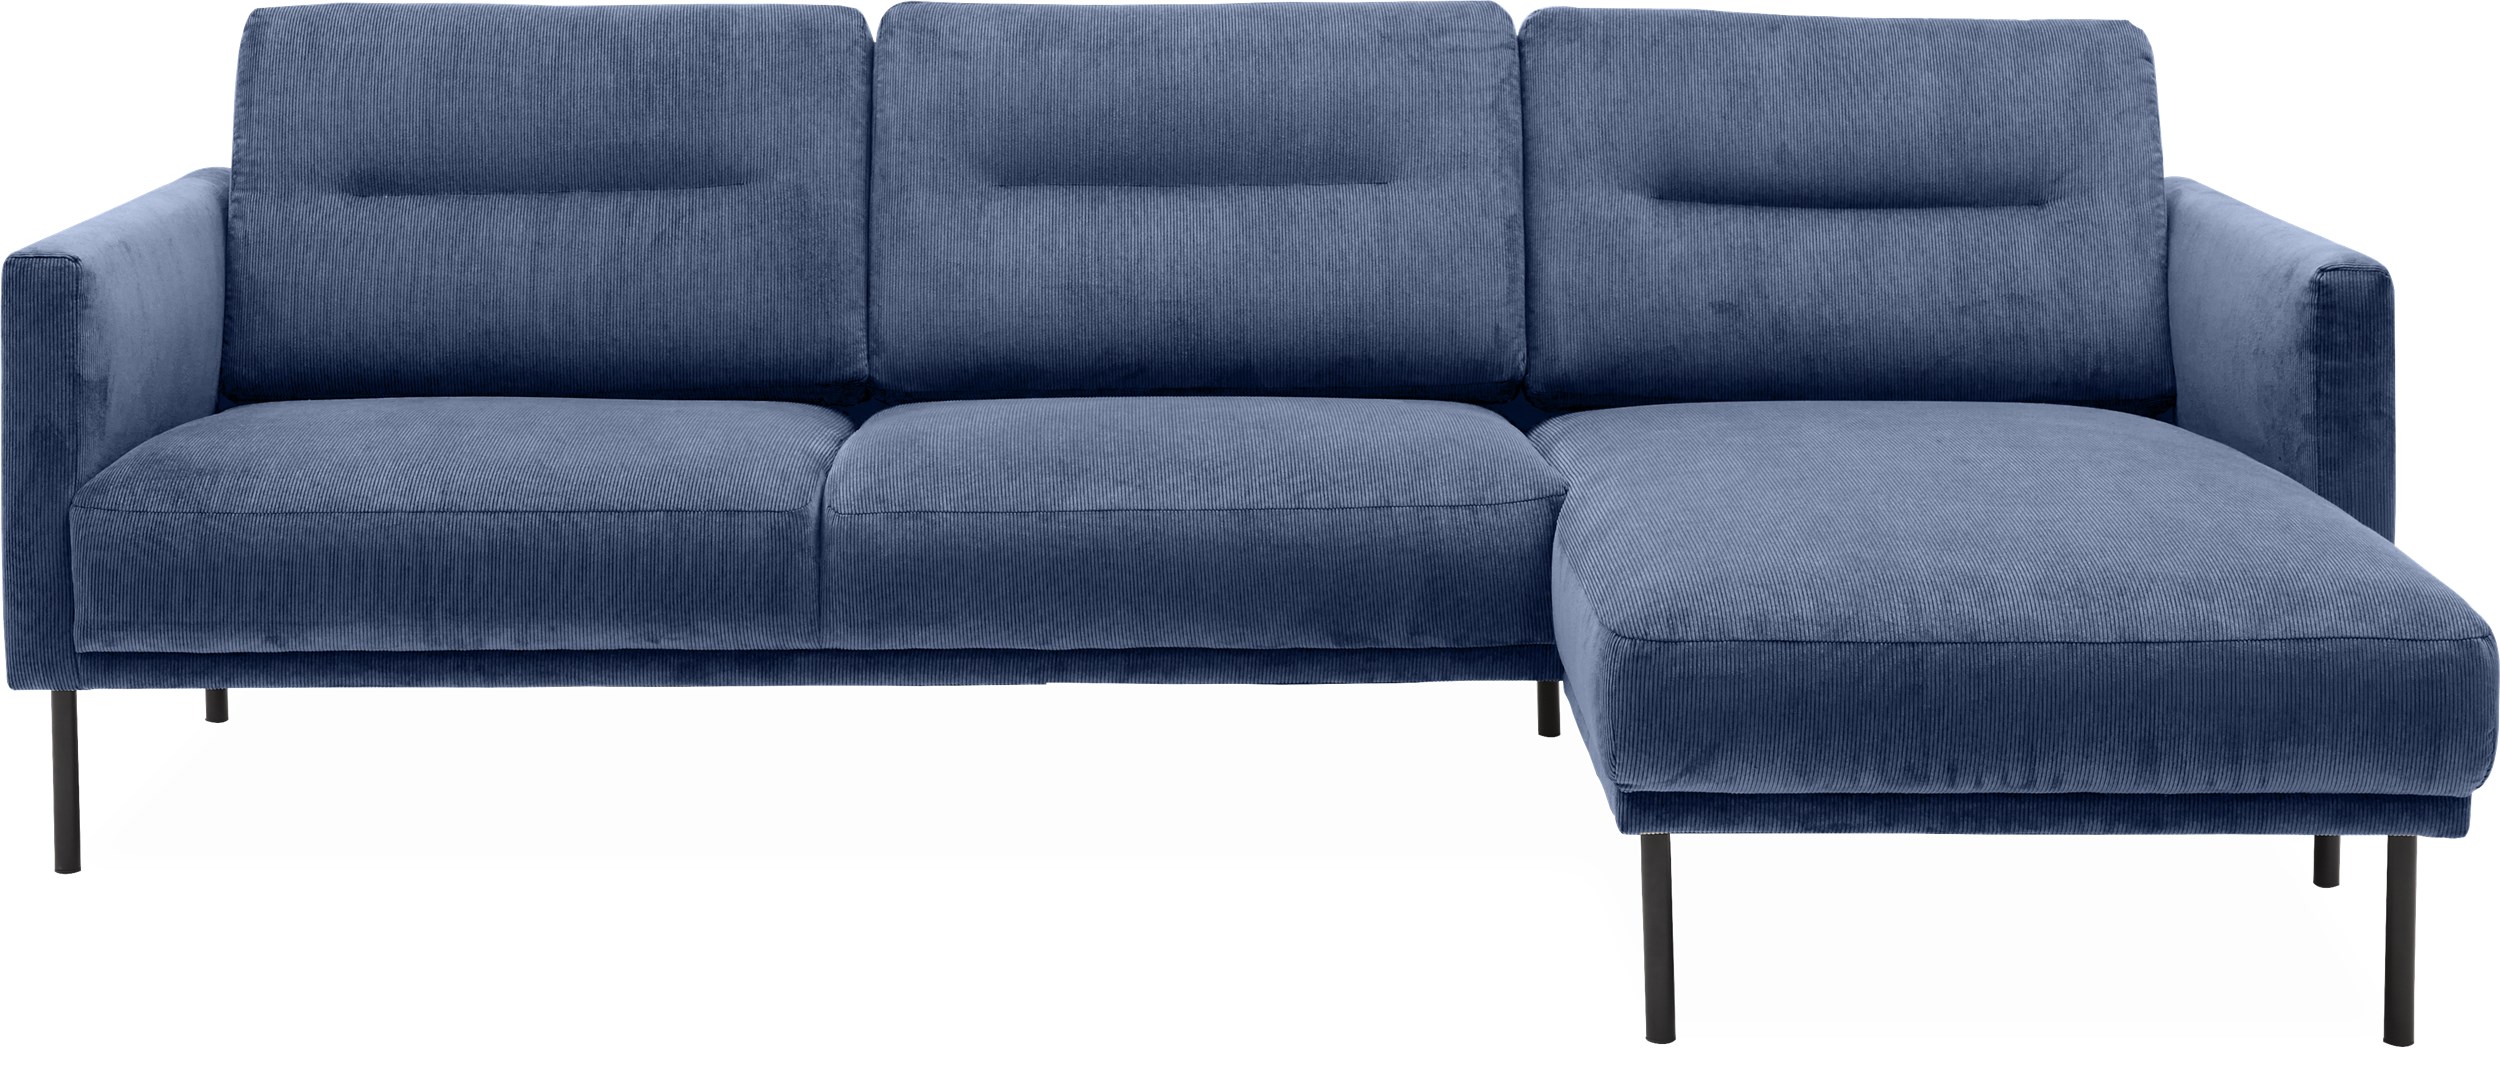 Larvik højrevendt sofa med chaiselong - Wave 220 Royal blue stof og ben i sortlakeret metal